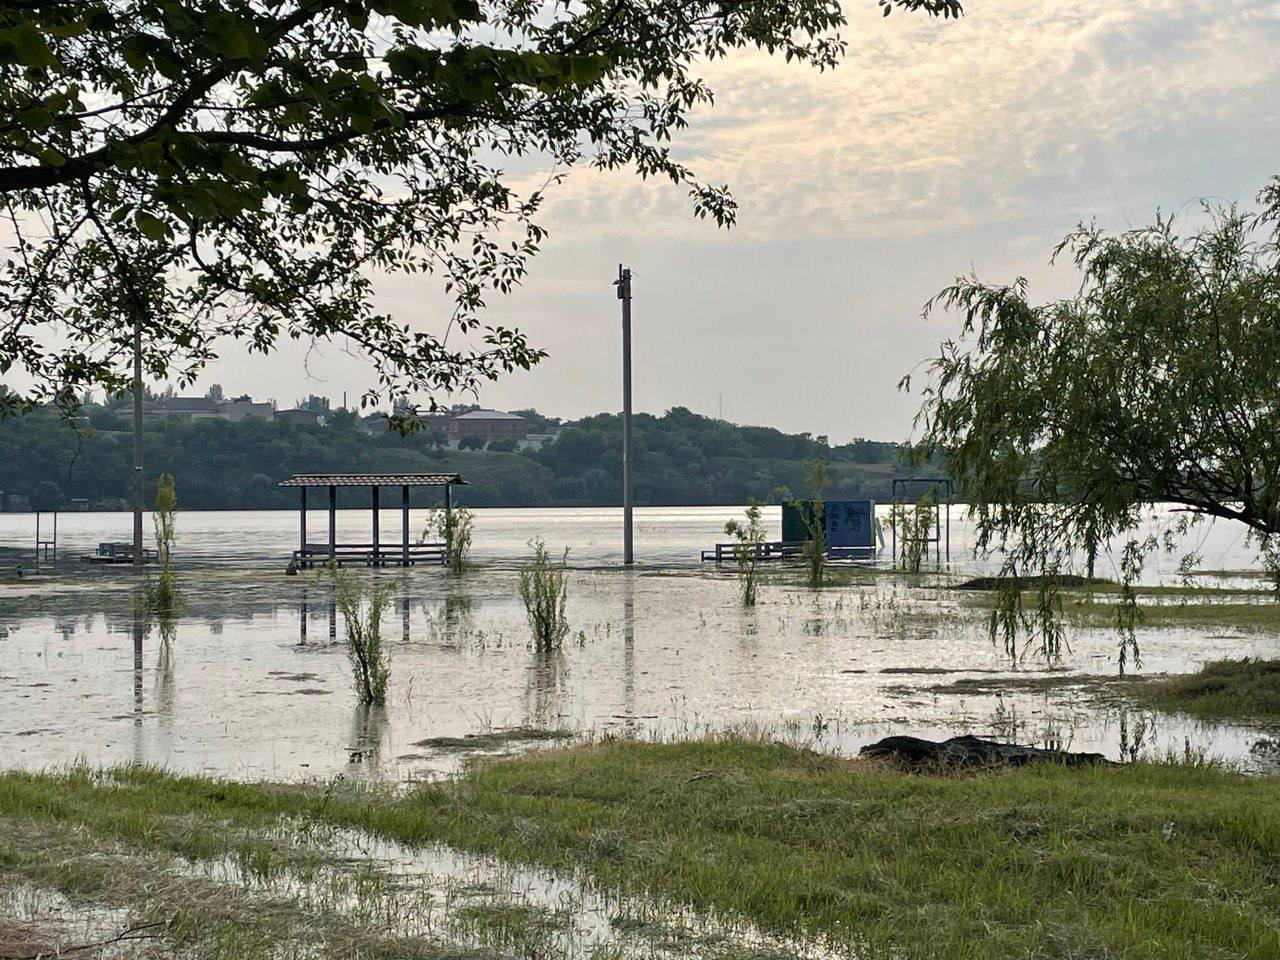 Олешки затоплены на 90%, в Голой Пристани уровень воды достигает более трех метров: люди оказались в ловушке (обновляется)